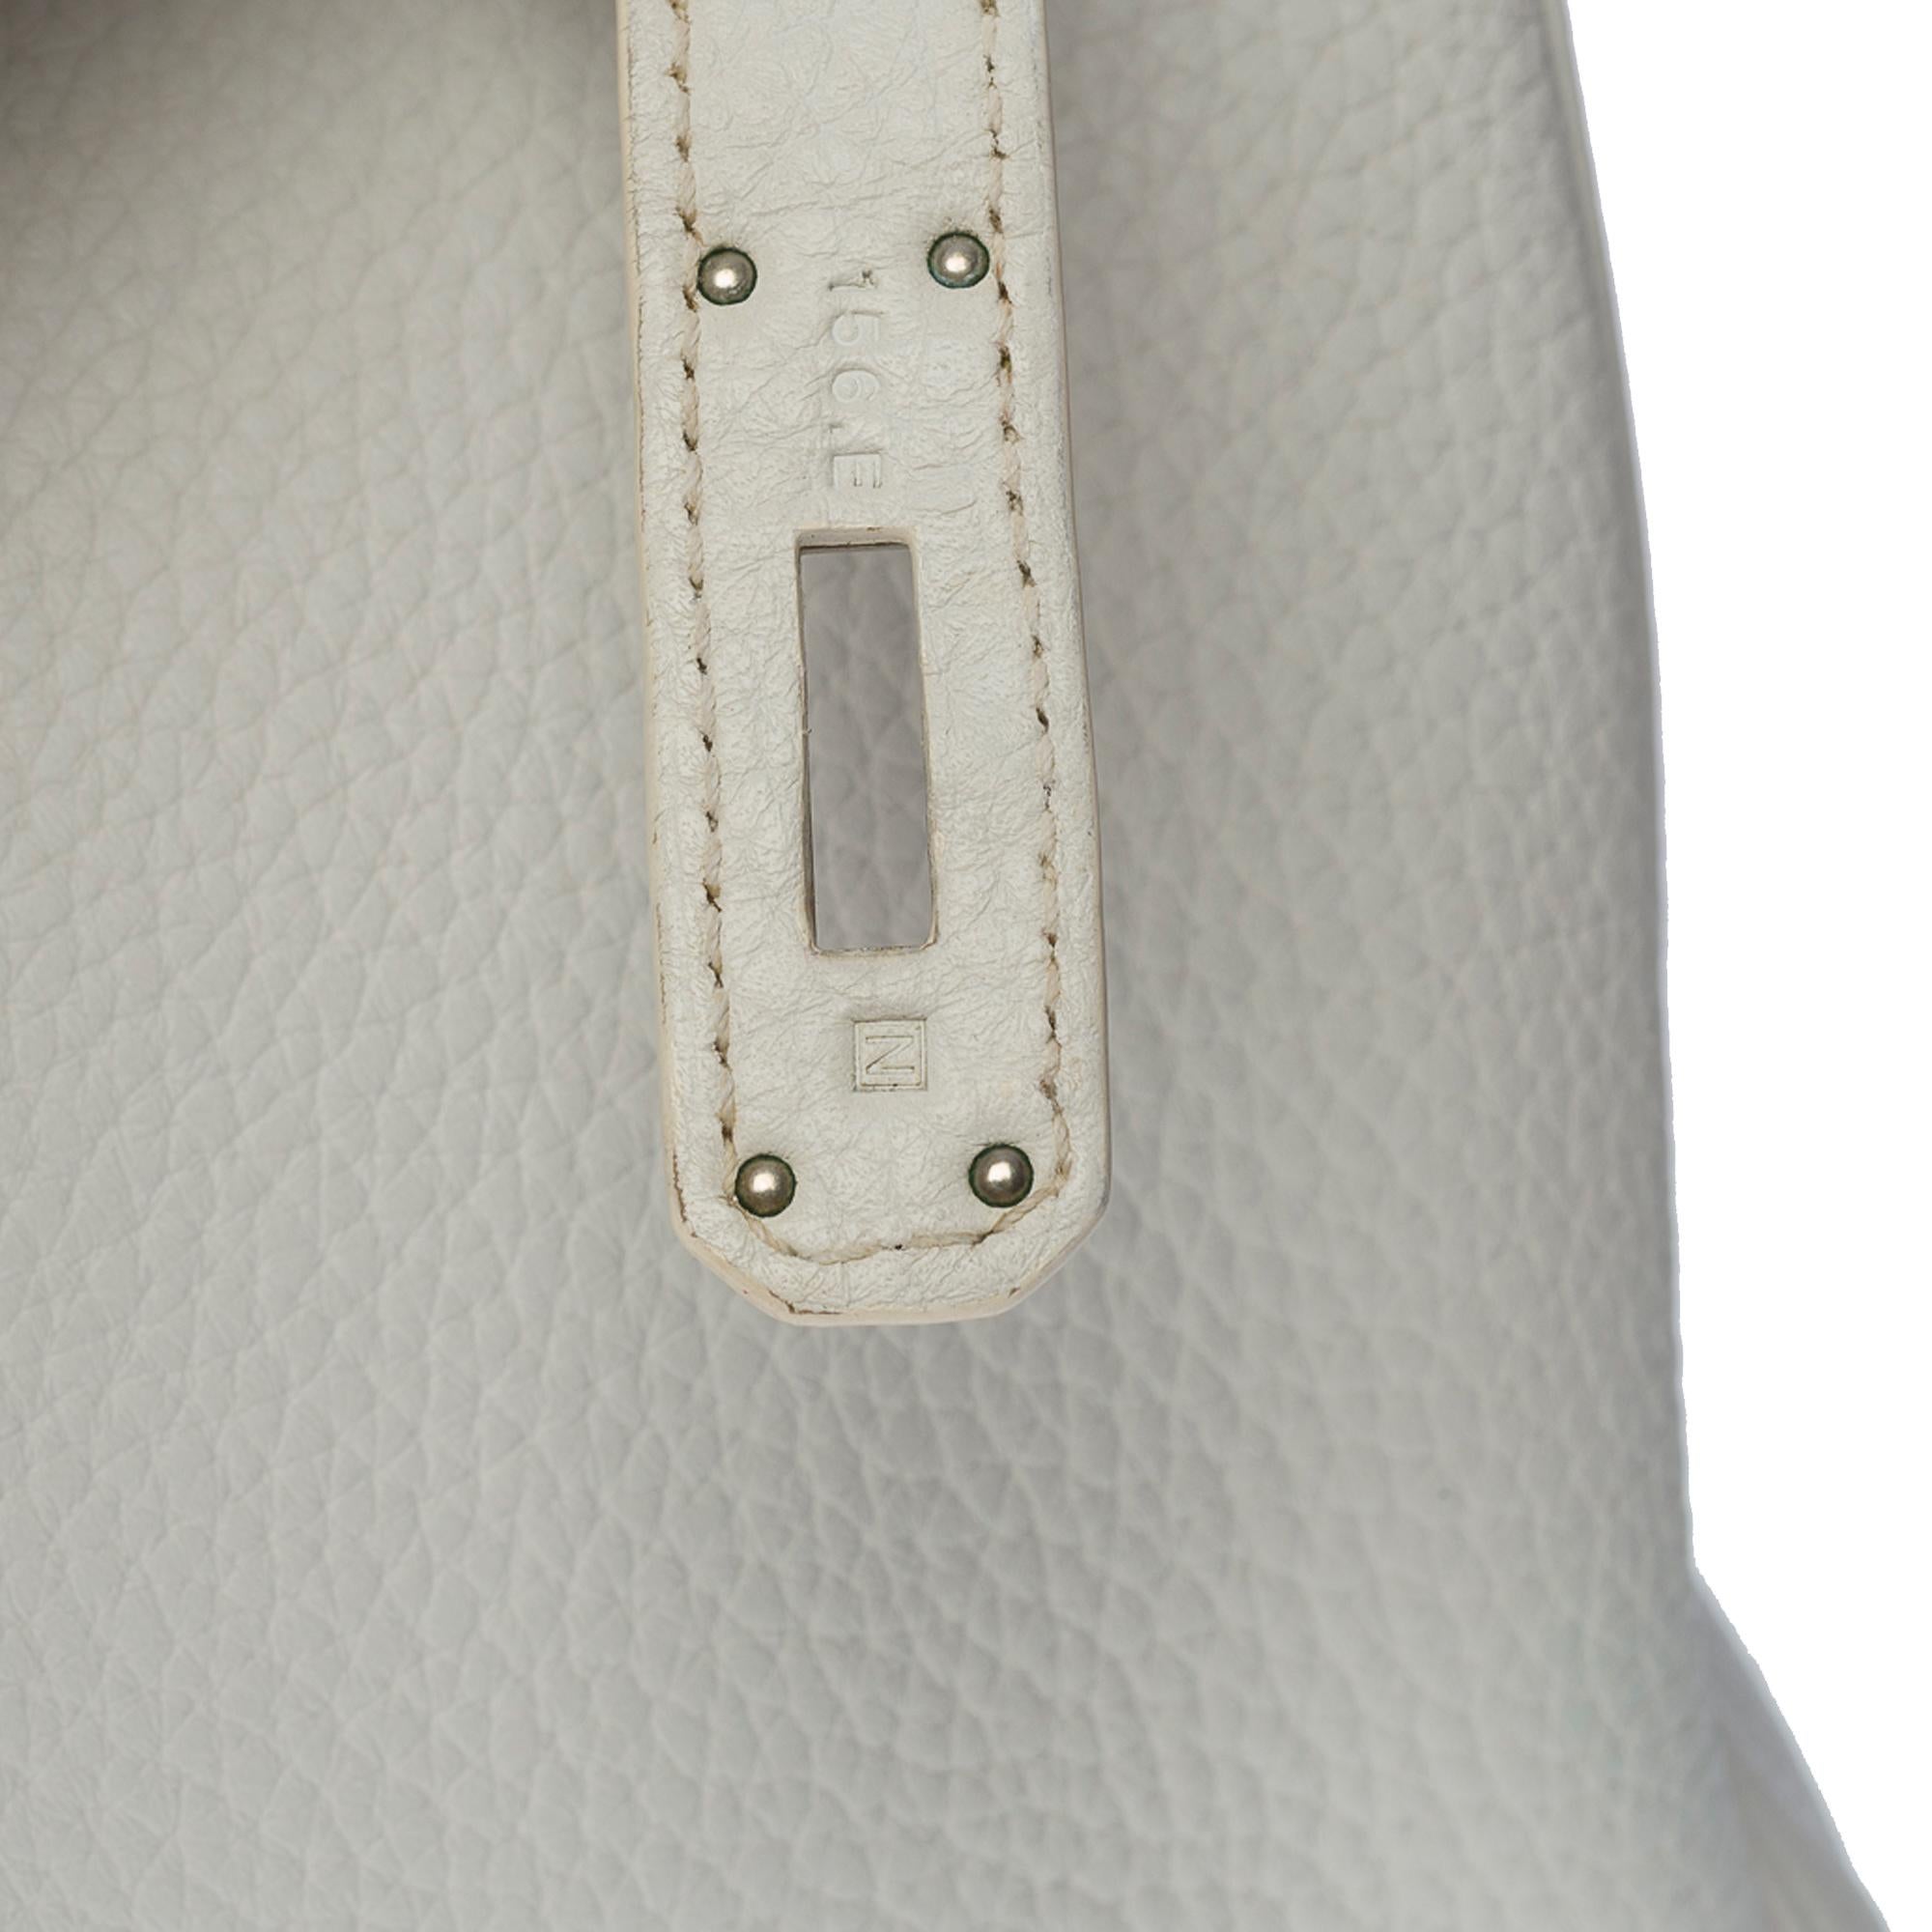 Stunning Hermès Birkin 35 handbag in white Togo leather, SHW 1